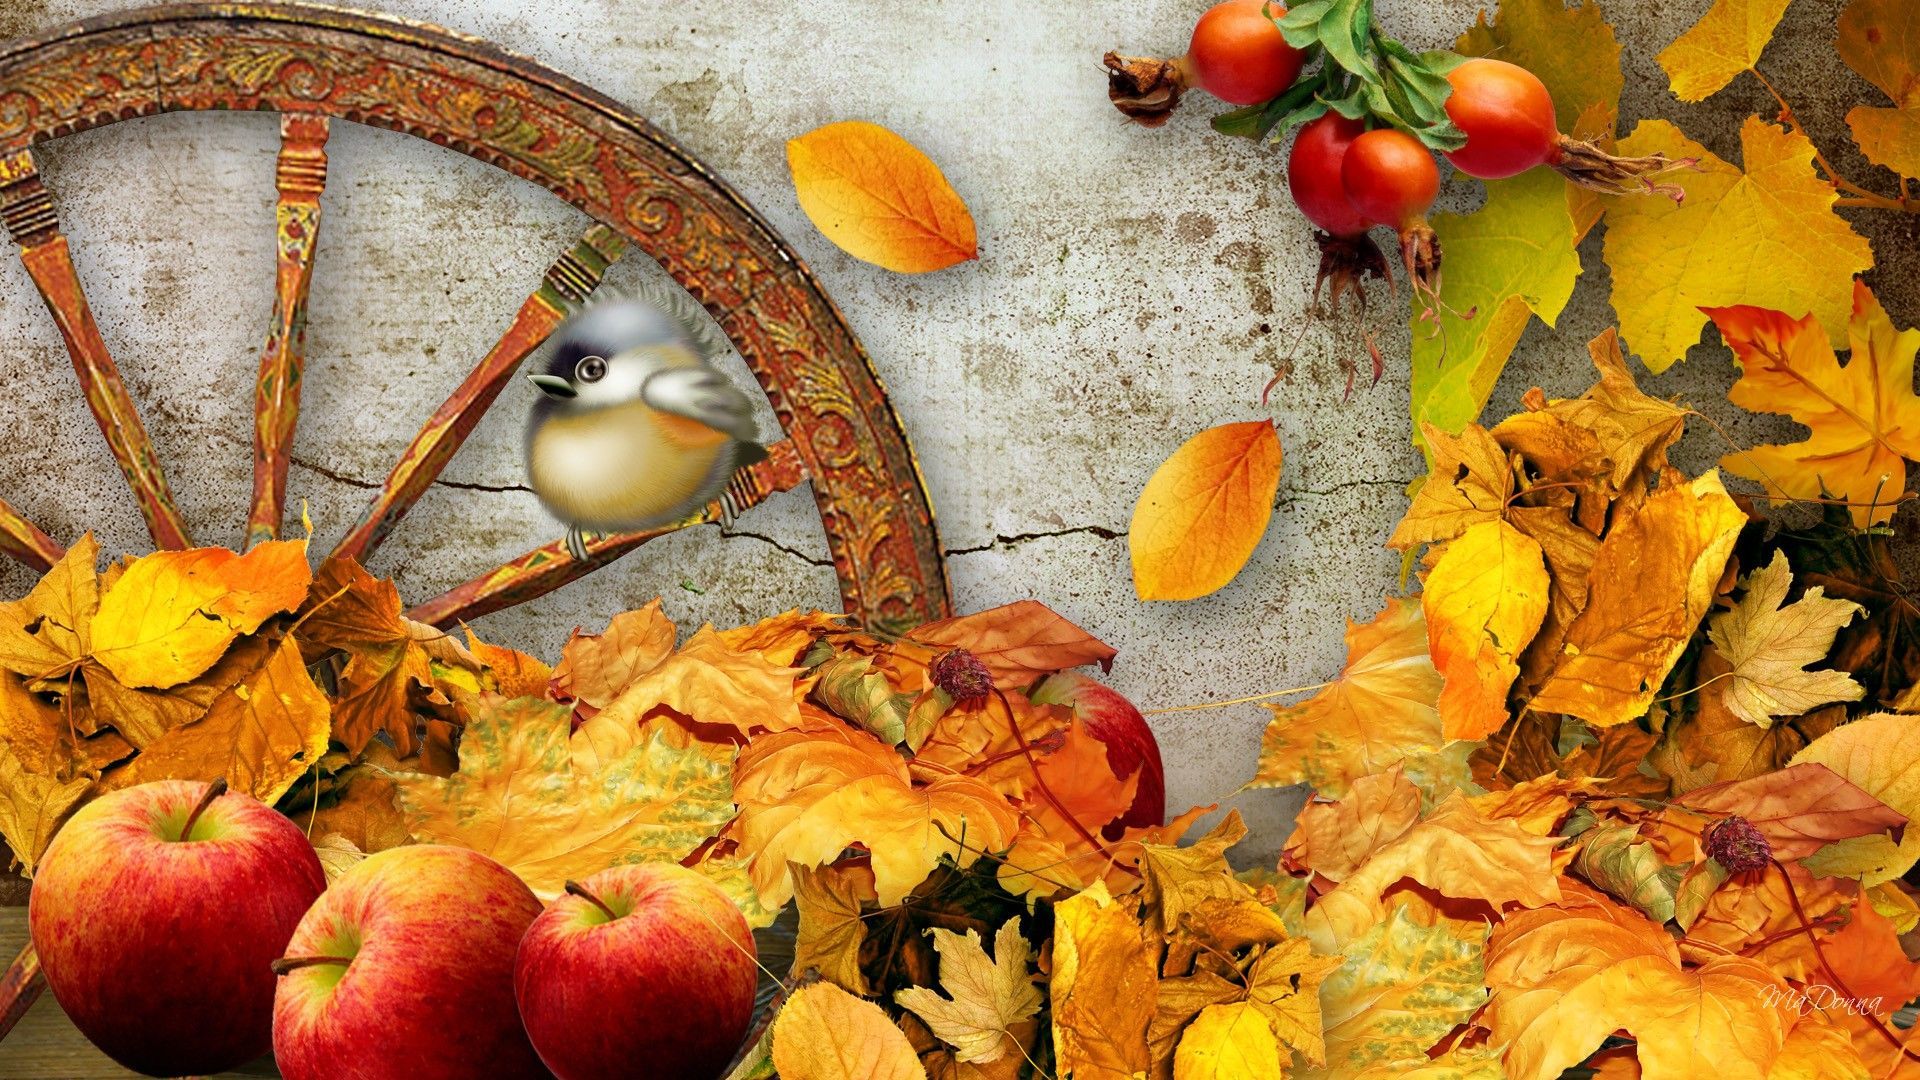 Fall Harvest Wallpaper Mobile. Fall wallpaper, Apple harvest, Harvest